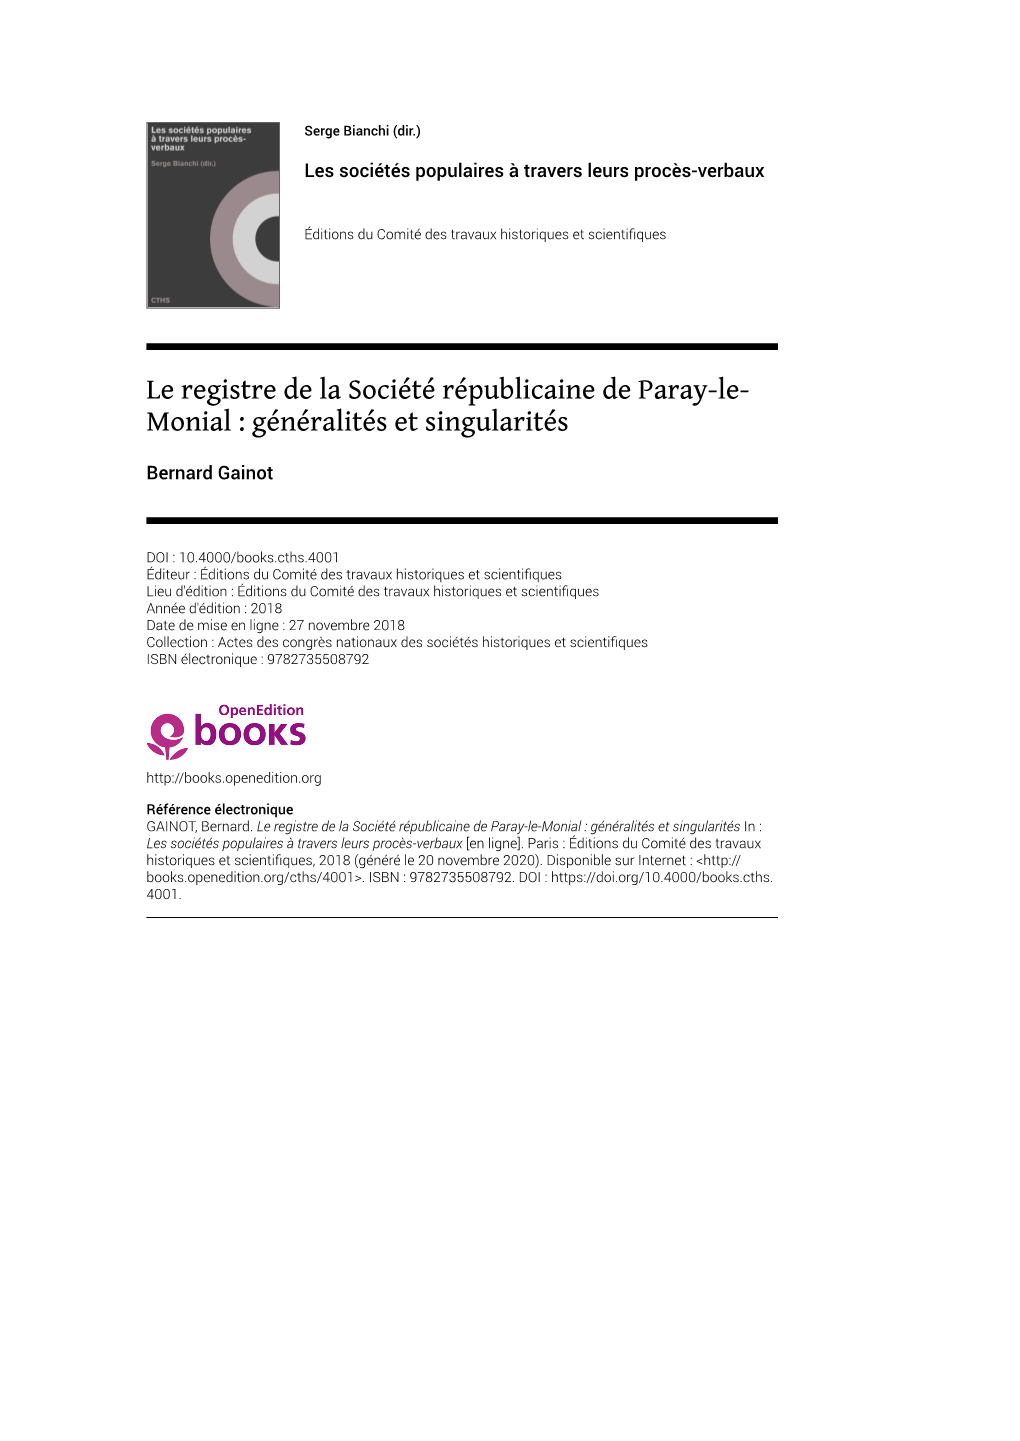 Le Registre De La Société Républicaine De Paray-Le-Monial : Généralités Et Singularités in : Les Sociétés Populaires À Travers Leurs Procès-Verbaux [En Ligne]